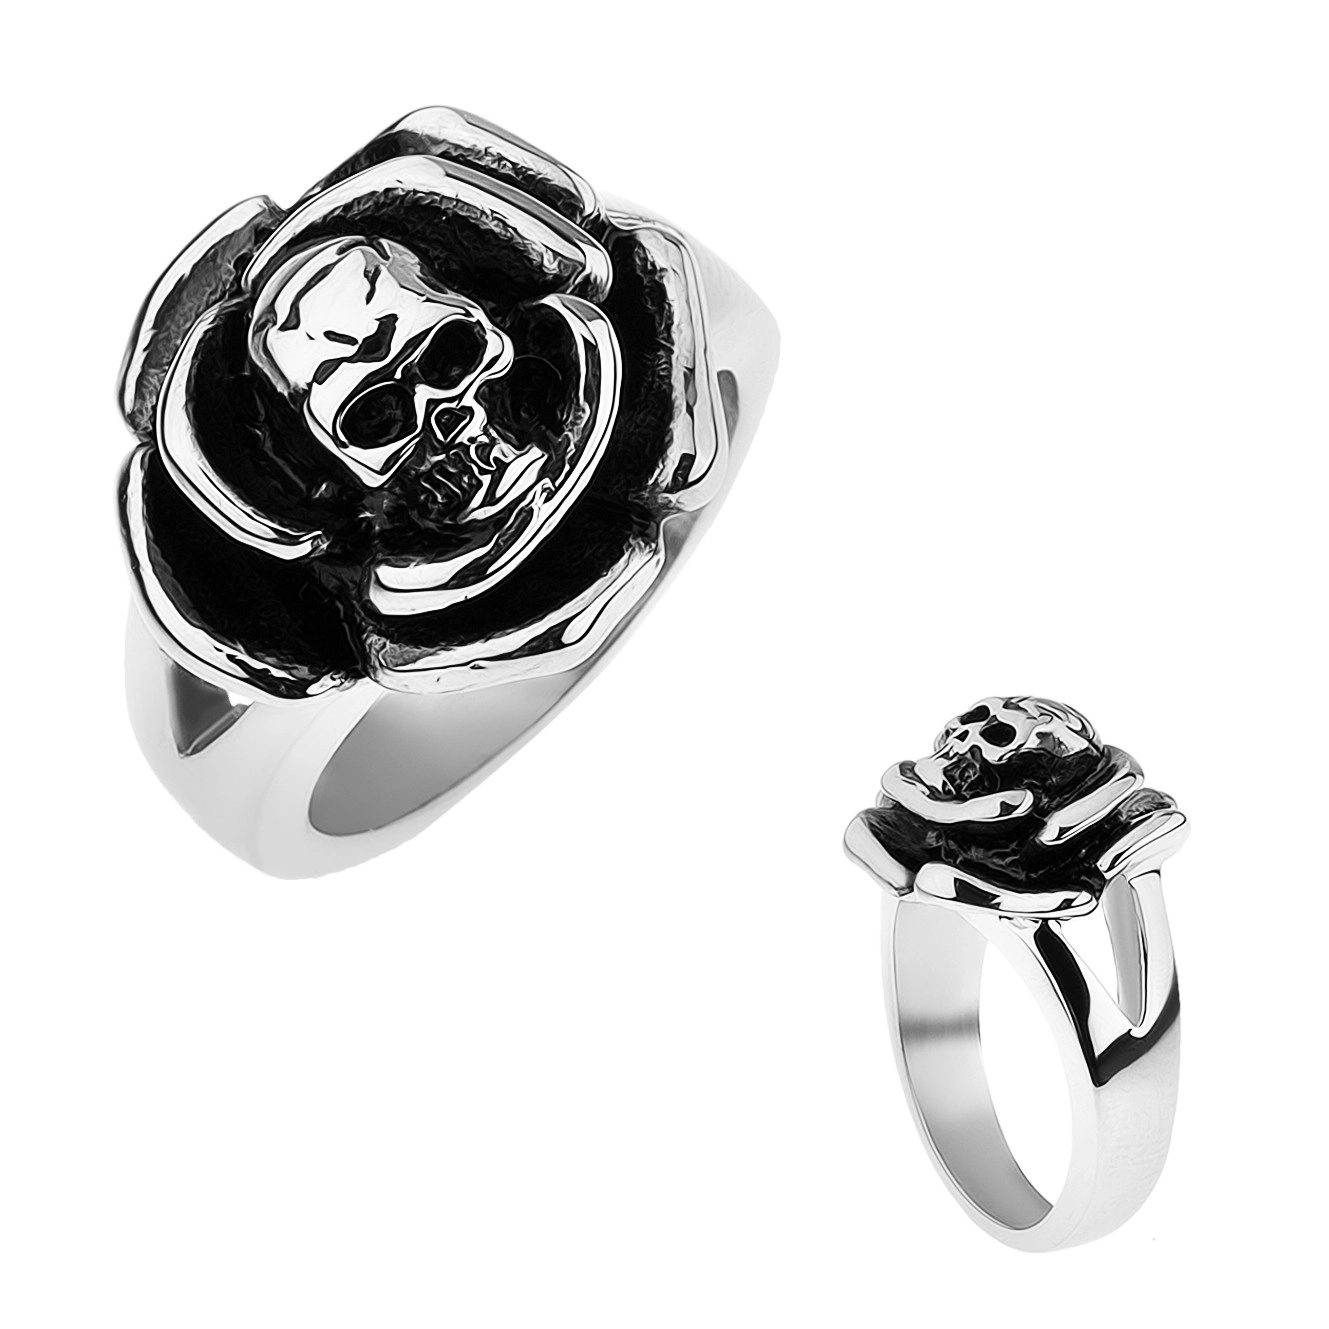 Patinovaný ocelový prsten, růže s lebkou uprostřed, rozdvojená ramena - Velikost: 63